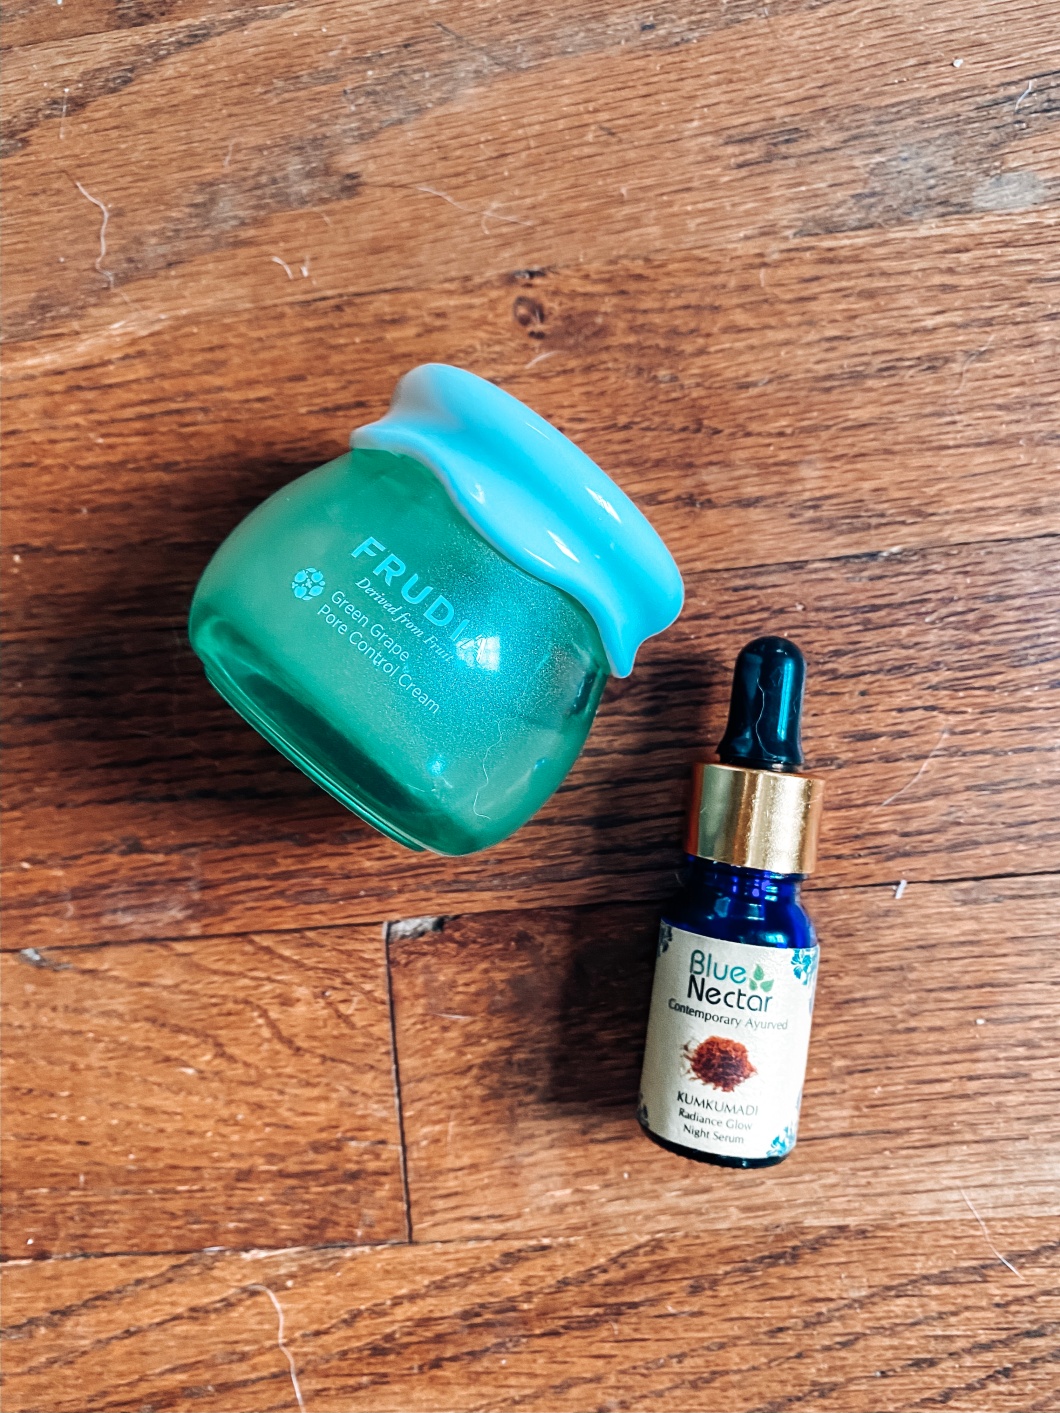 Image of Frudia moisturizing cream and Blue Nectar moisturizing oil.